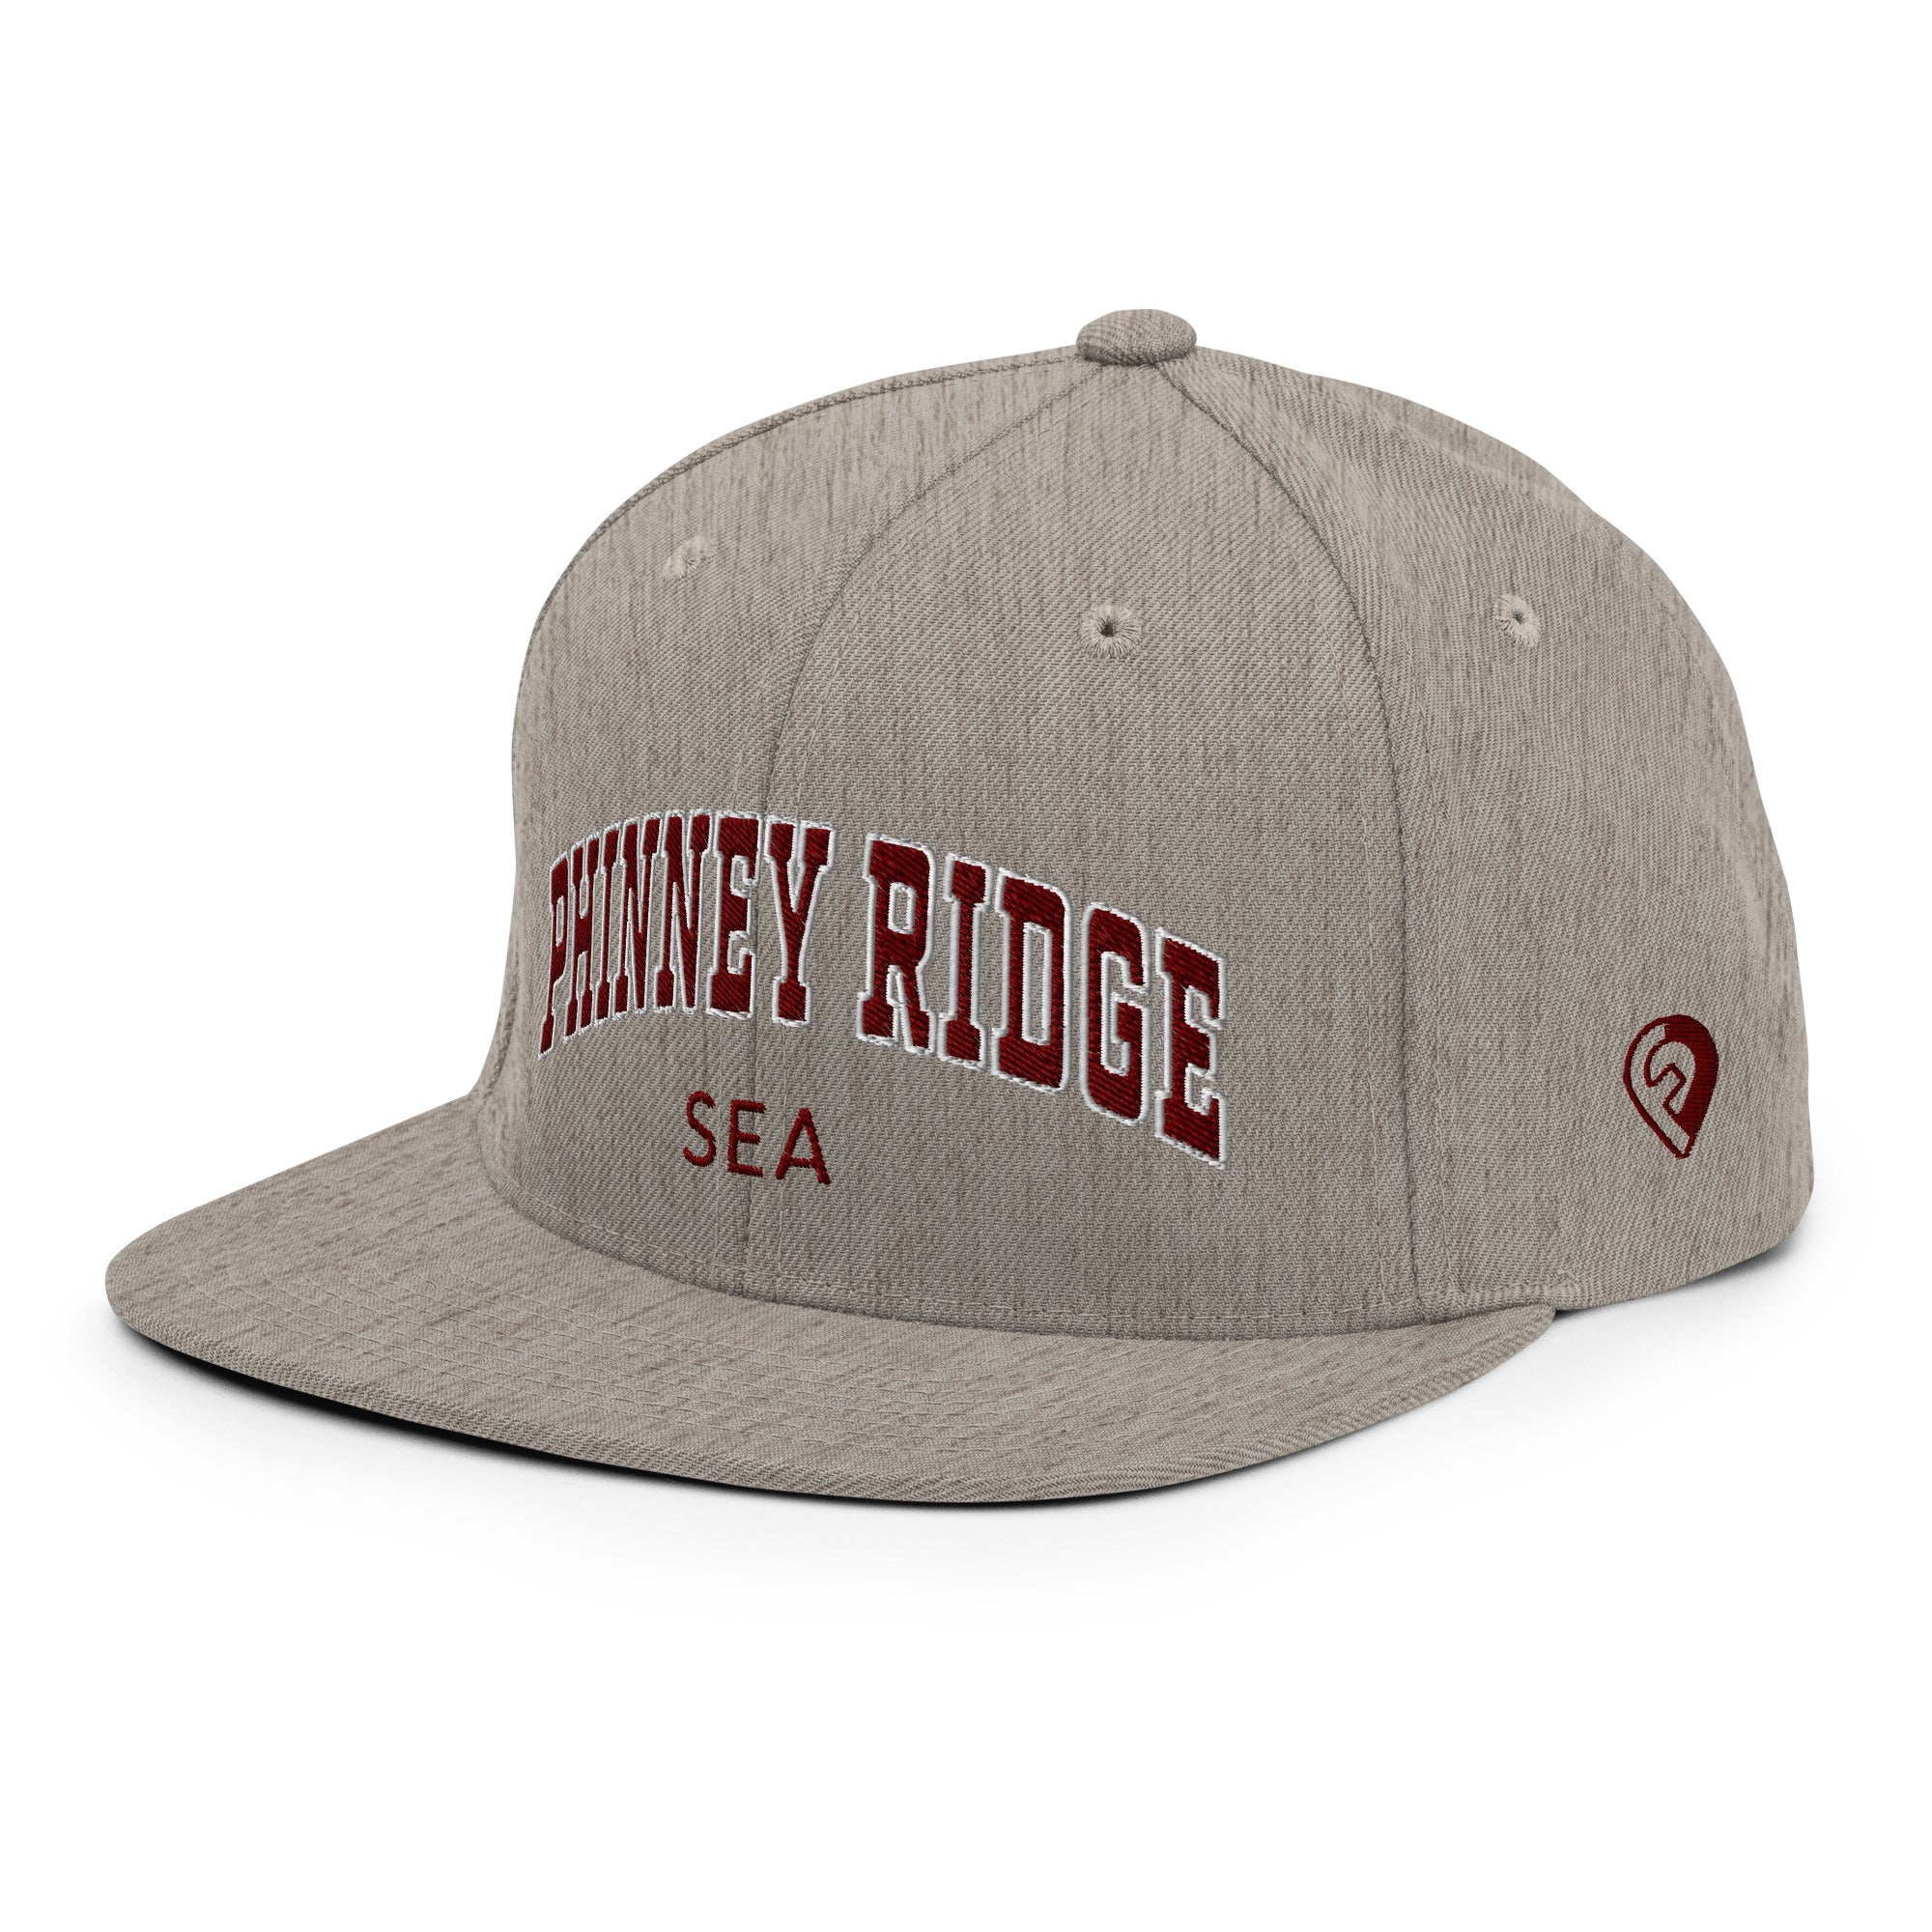 Bold Snapback Hat - Phinney Ridge | Seattle, WA